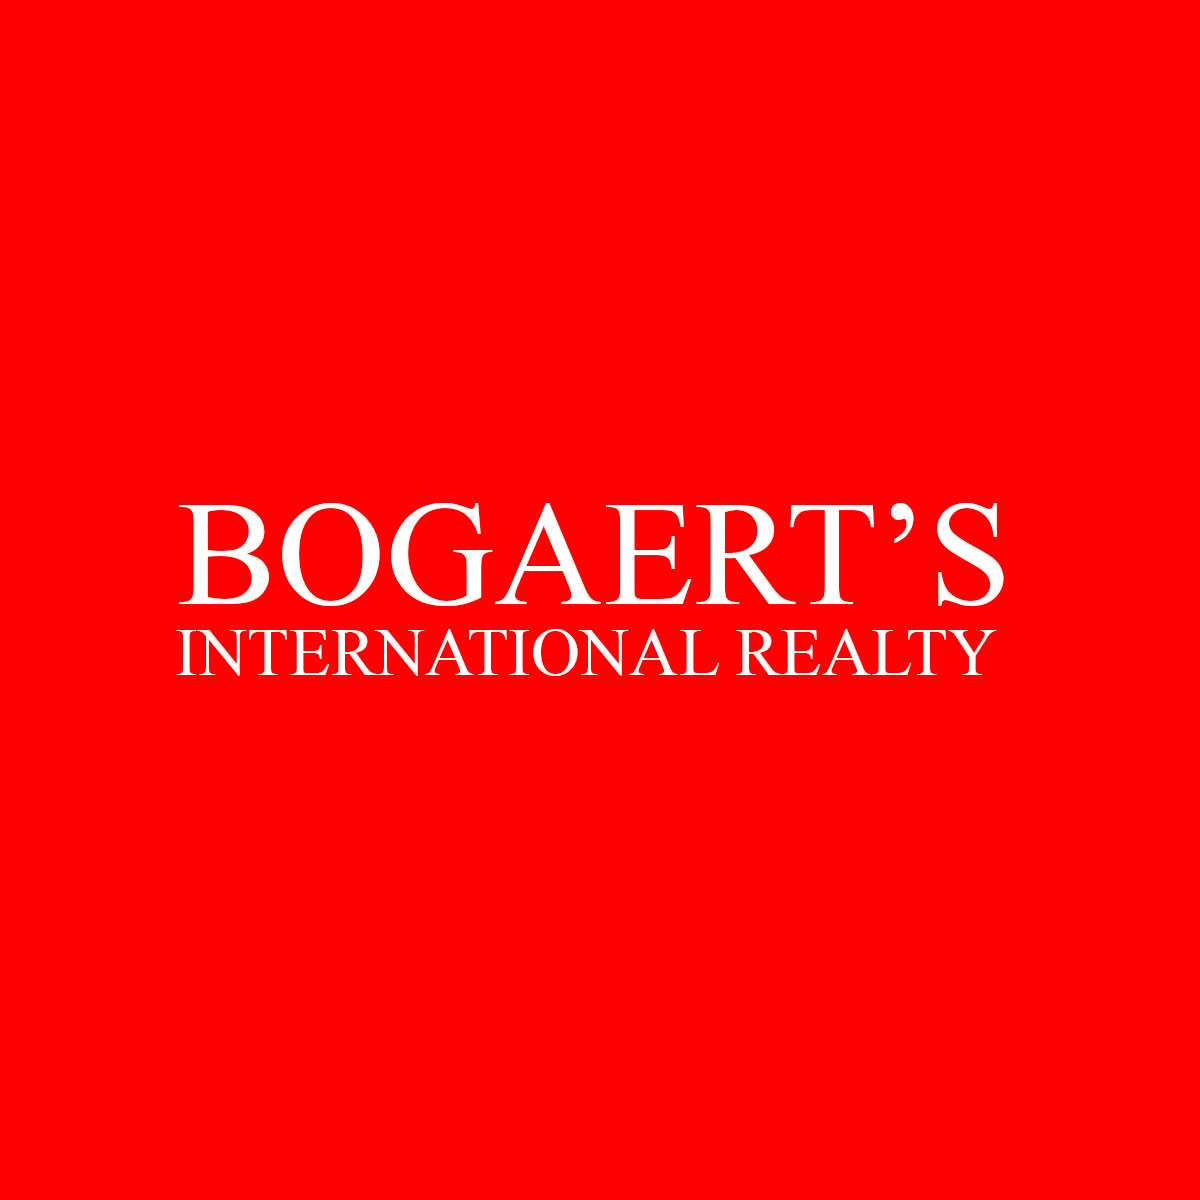 Bogaert's International Realty